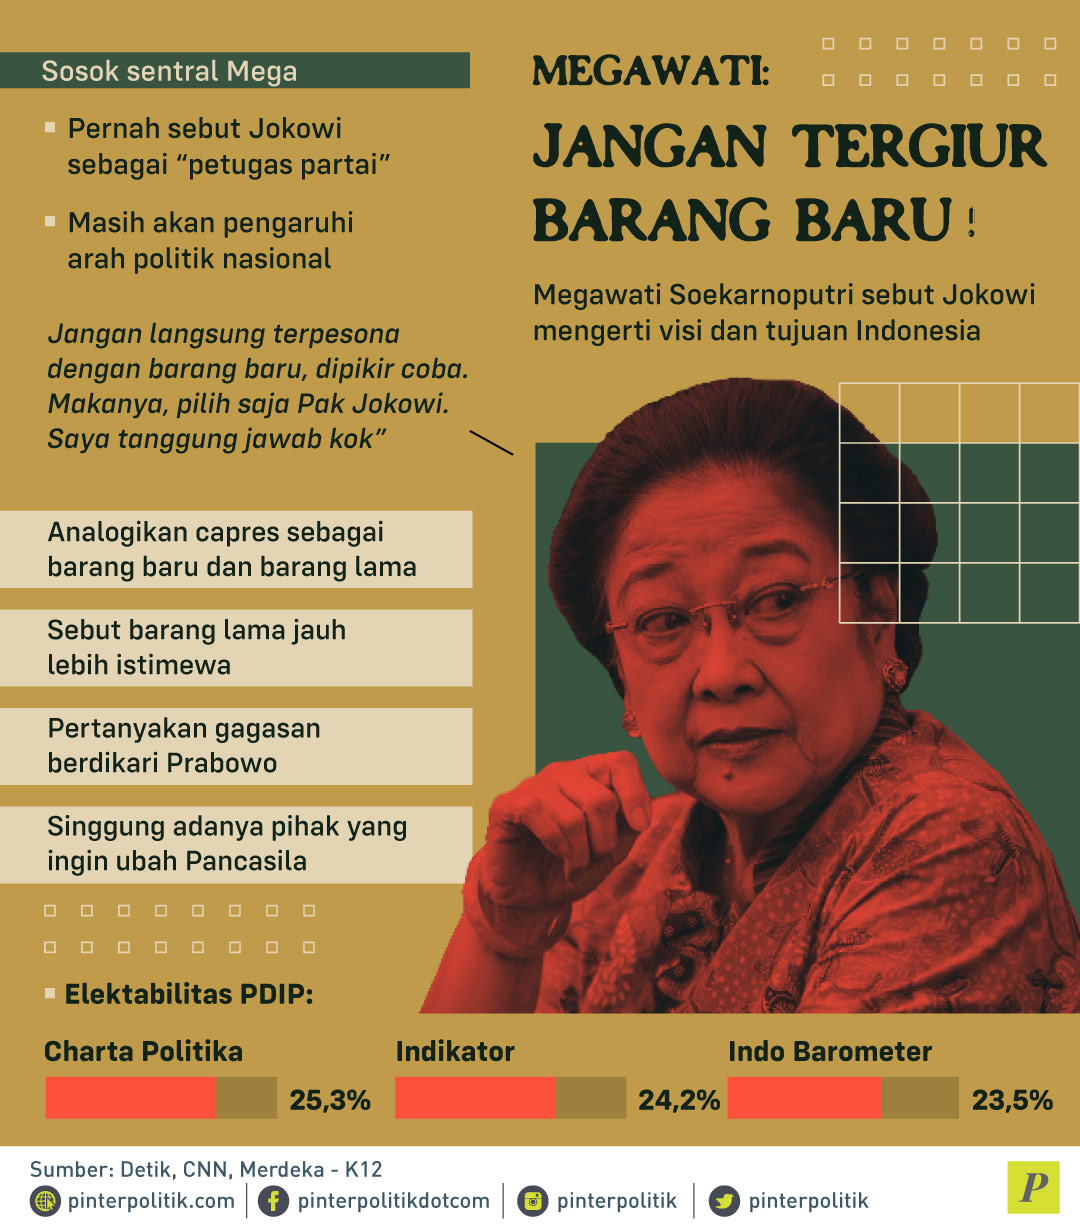 Megawati Soekarnoputri sebut Jokowi mengerti visi dan tujuan Indonesia